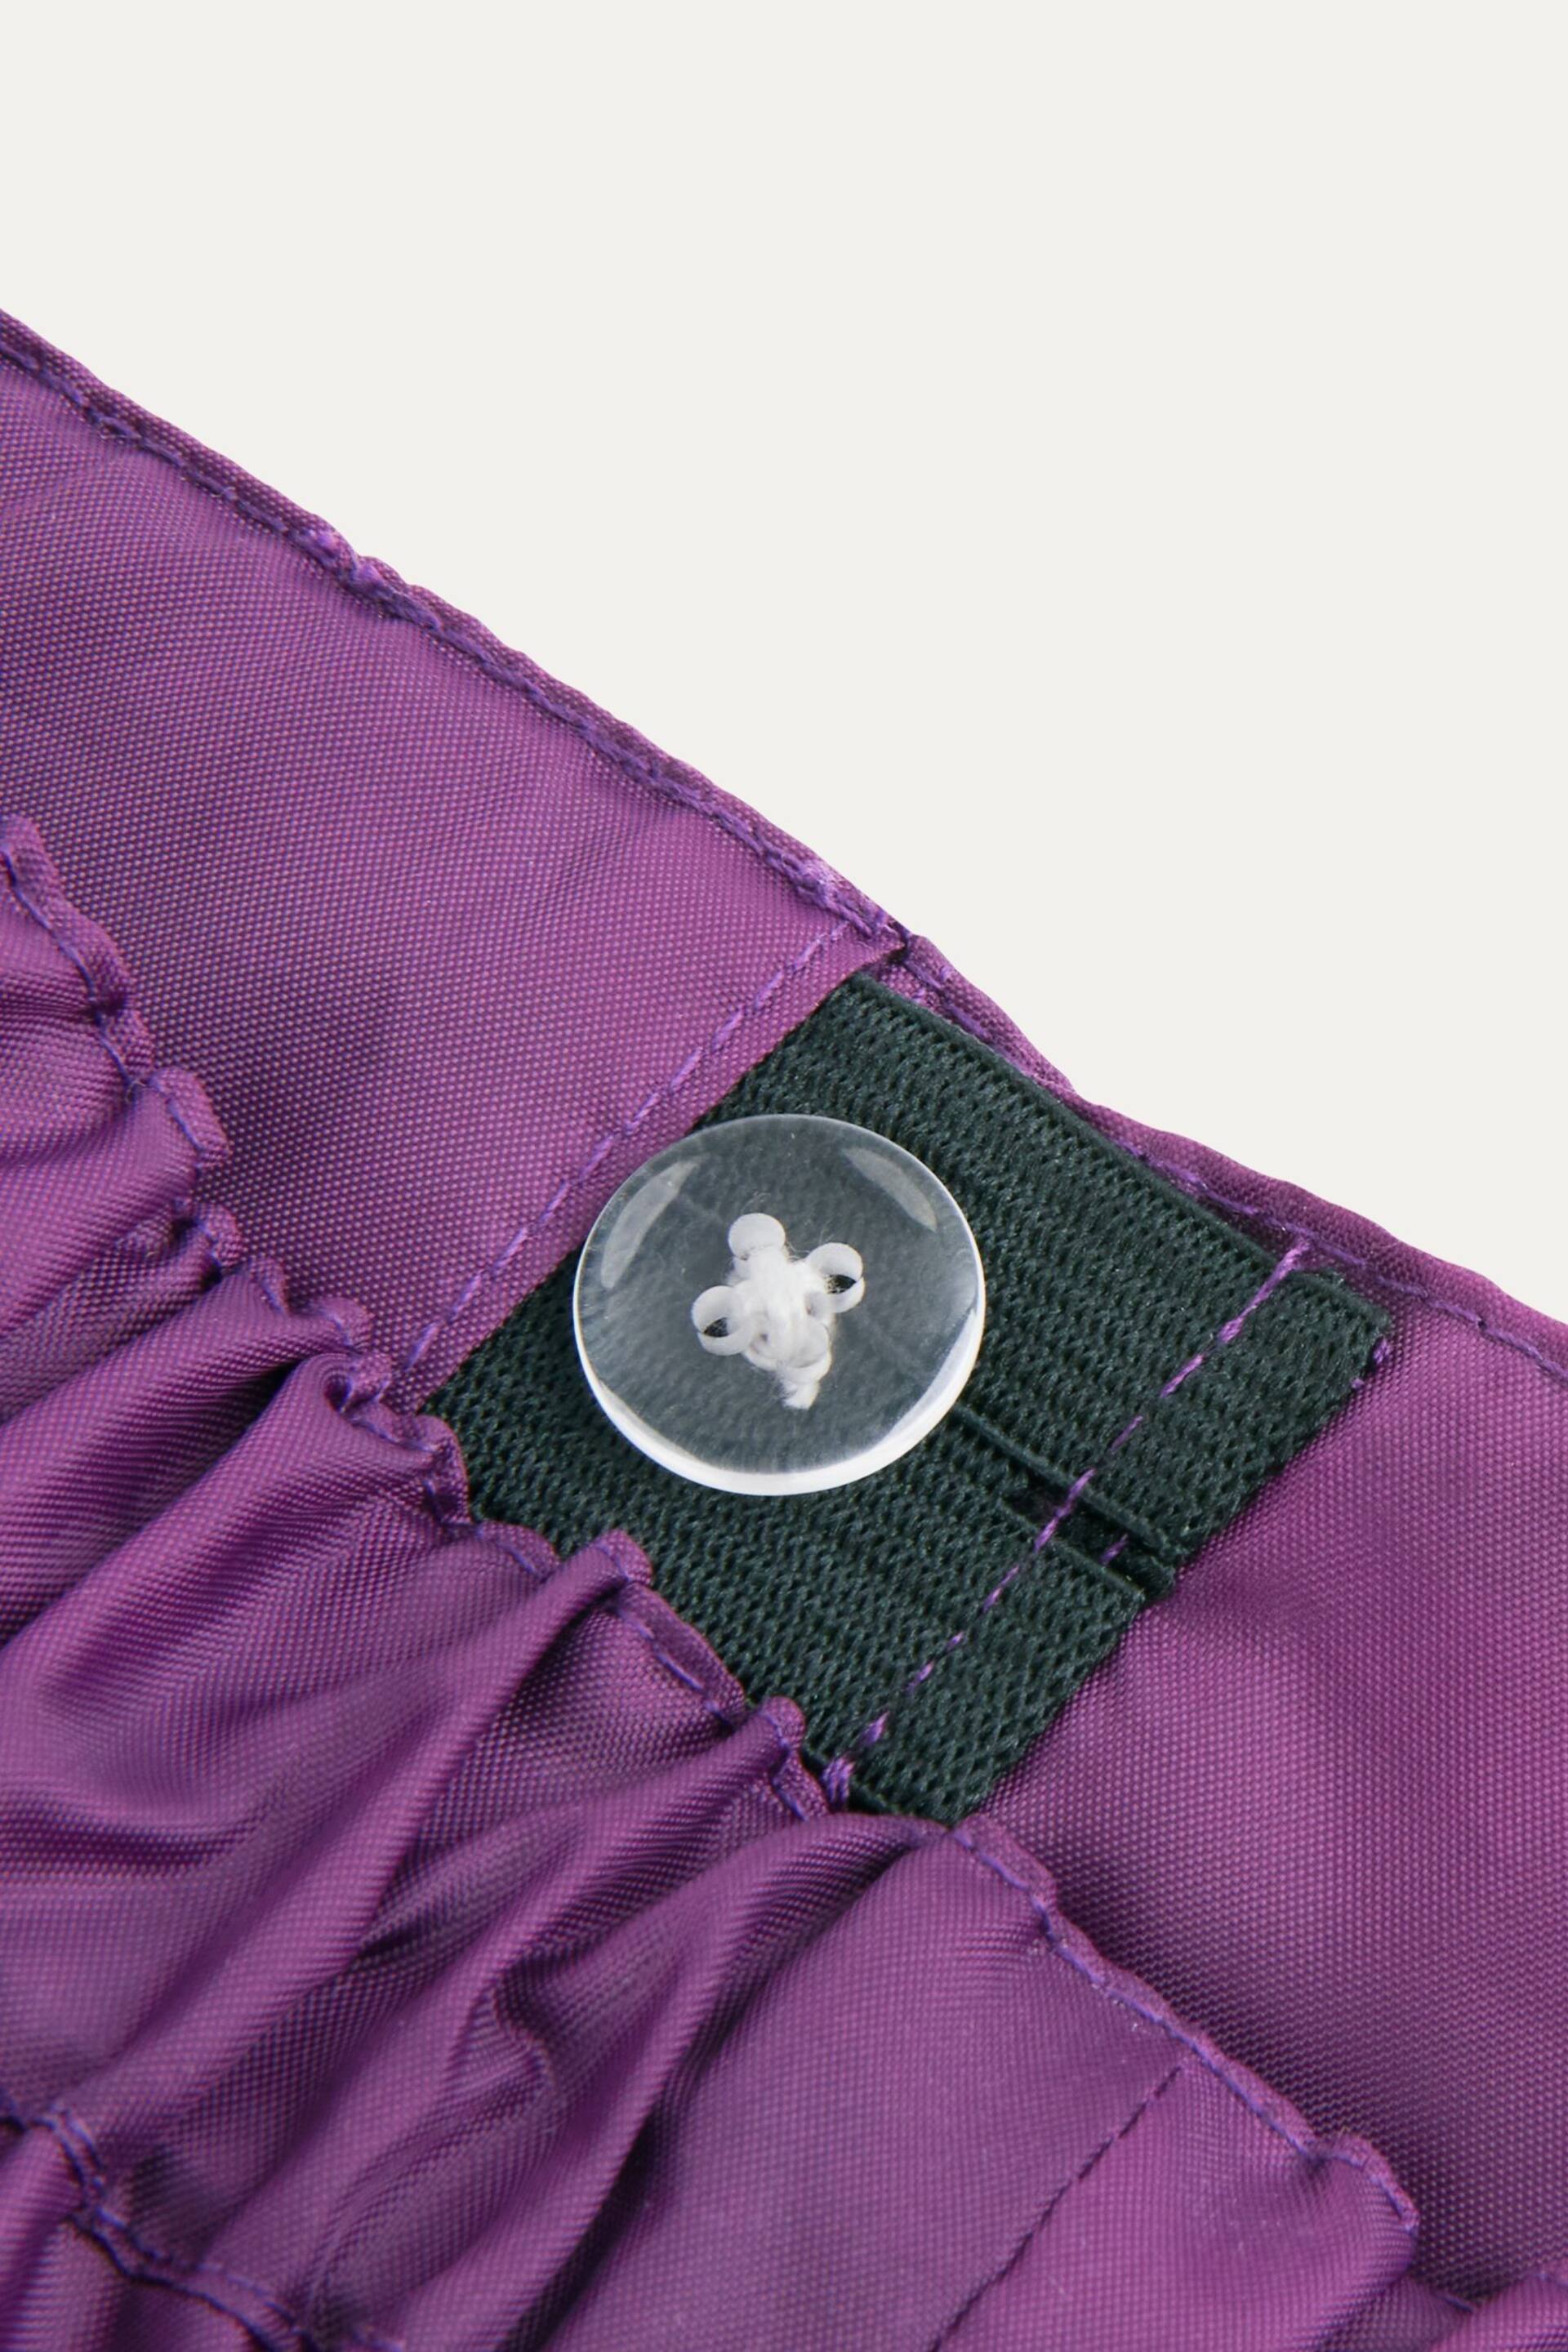 KIDLY Unisex Waterproof Packaway Trousers - Image 2 of 5